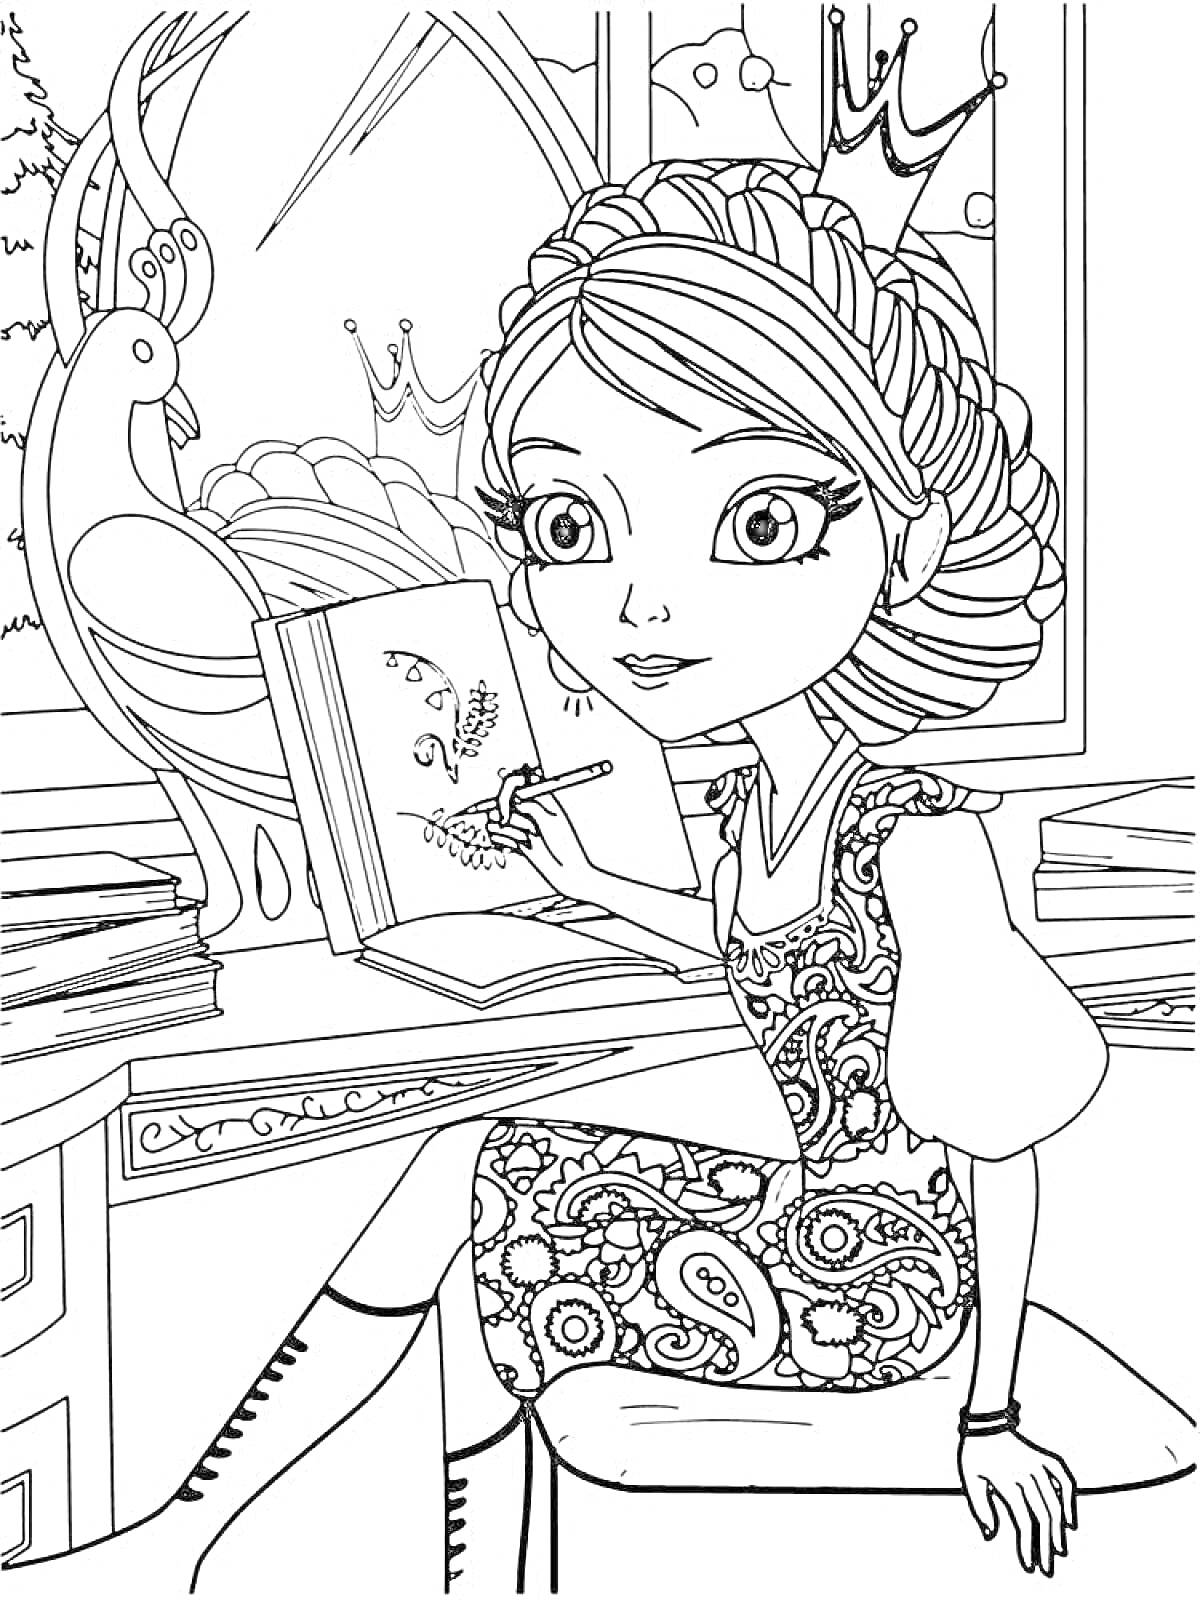 Раскраска Царевна Даша сидит на столе, рисует в альбоме, позади окно с сидящим павлином